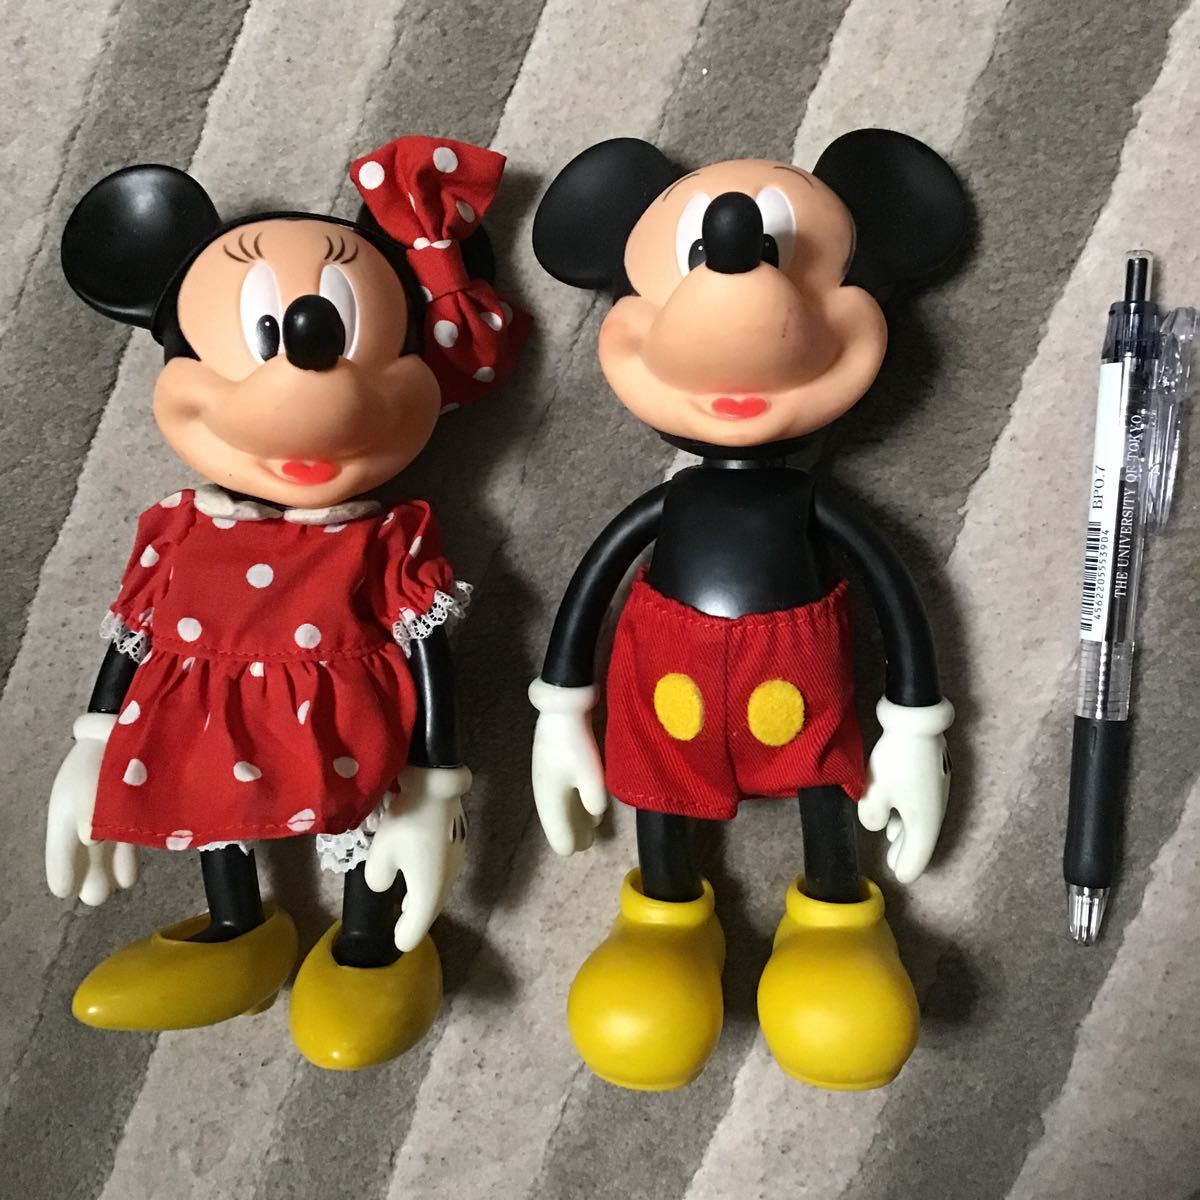 タカラ ミッキーマウス ミニーマウス 可動 人形 フィギュア 着せ替え人形 レア ビンテージ ディズニー まとめて Mickey Mouse  figure doll JChere雅虎拍卖代购